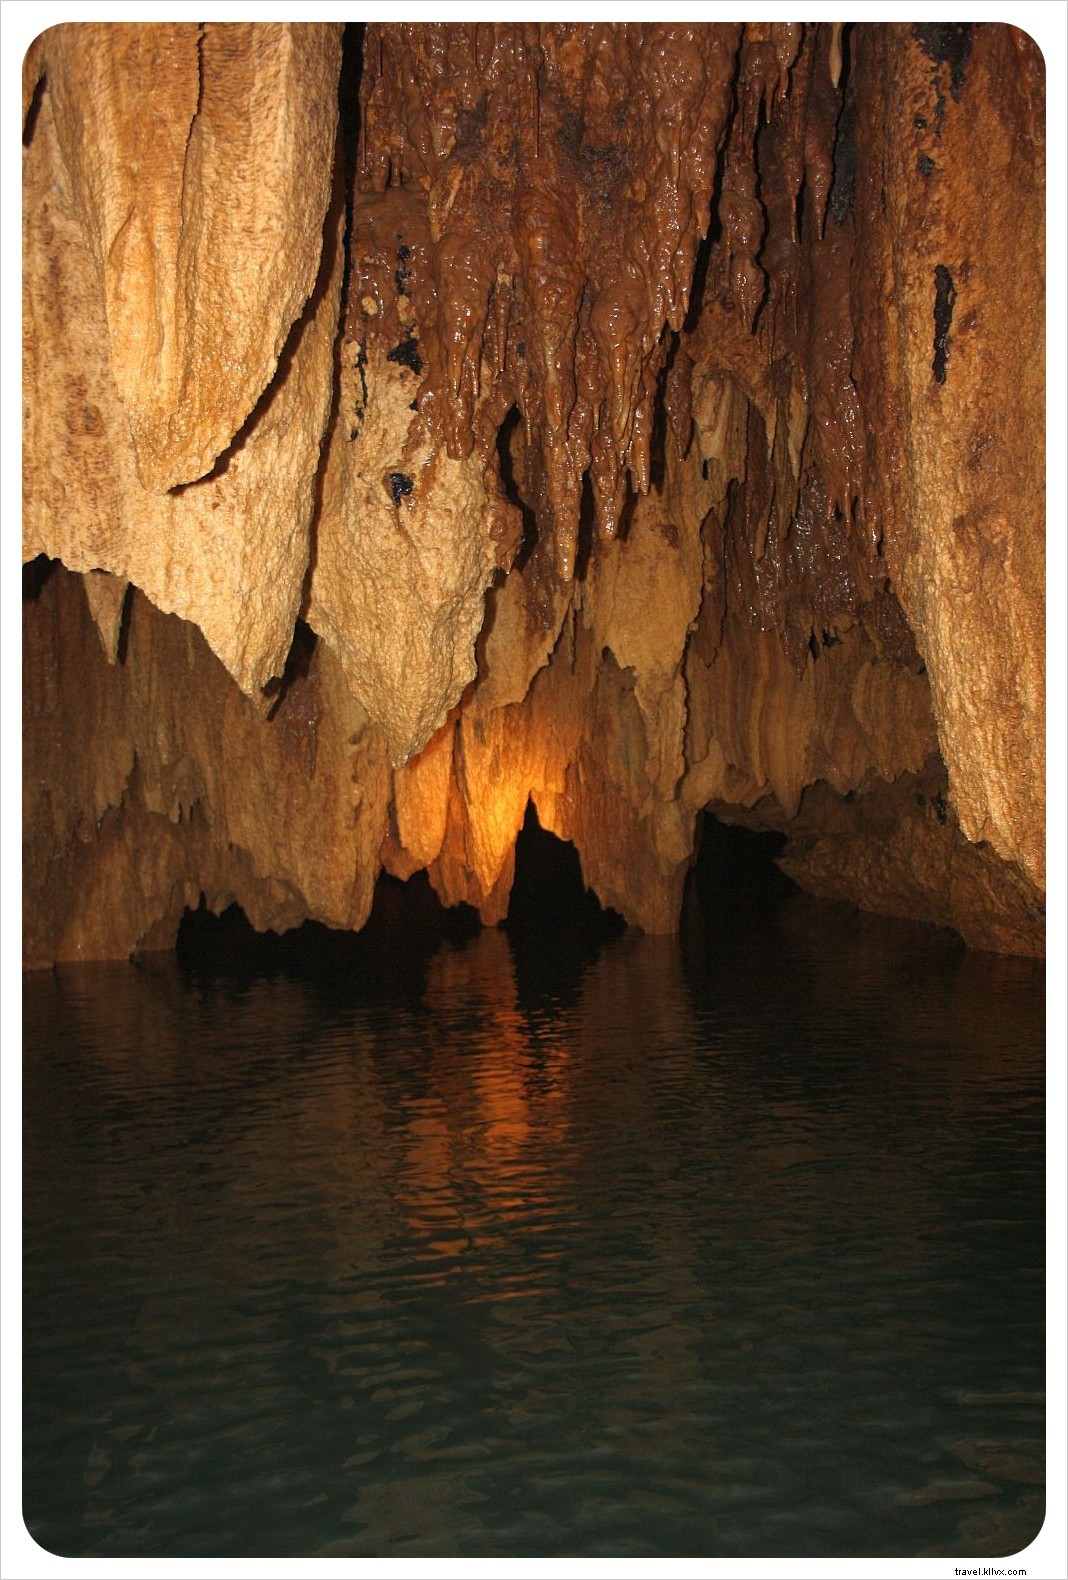 Caverna ATM de Belize:O dia em que nos tornamos exploradores de cavernas